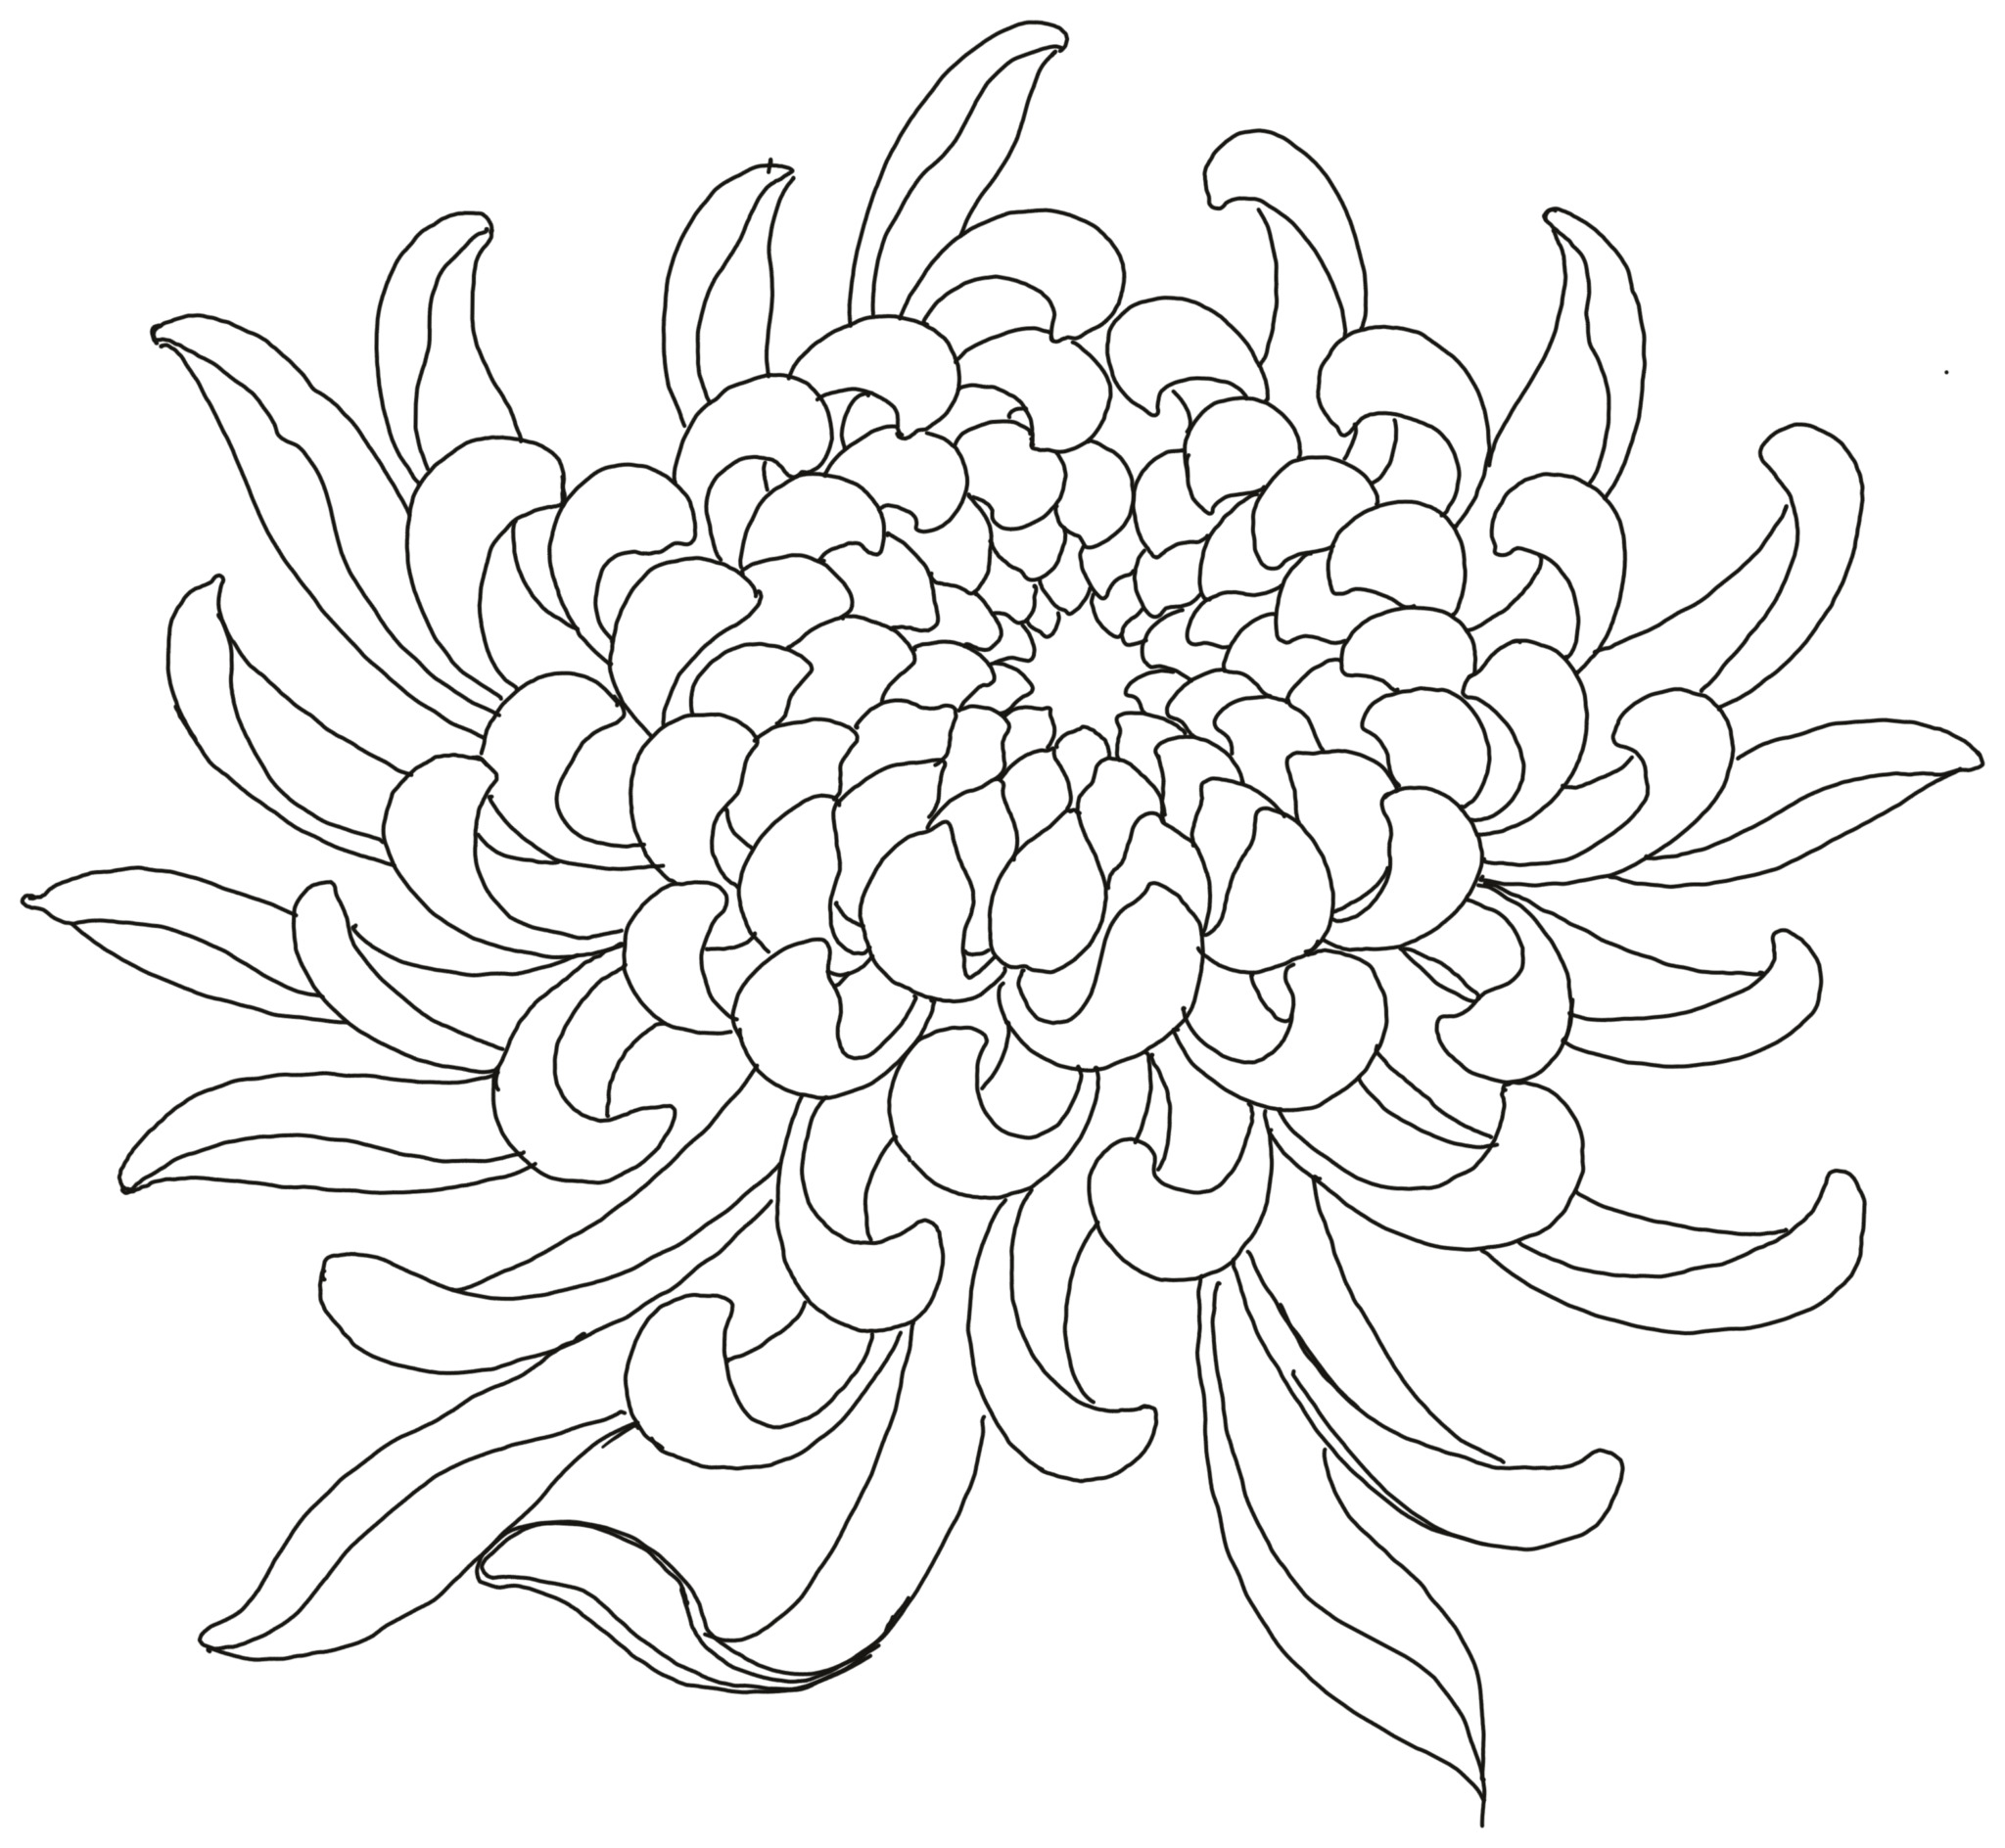 Xem hơn 48 ảnh về hình vẽ hoa cúc đơn giản  NEC